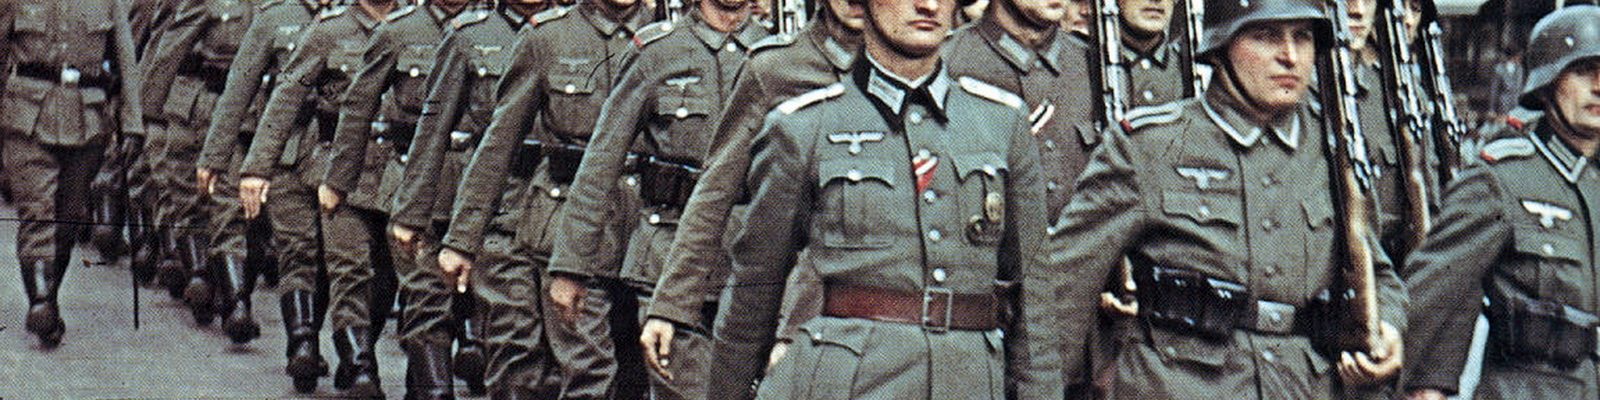 Każdy z niemieckich żołnierzy miał w swojej książeczce żołdu 10 przykazań żołnierza (Erichvoned/CC BY-SA 4.0)